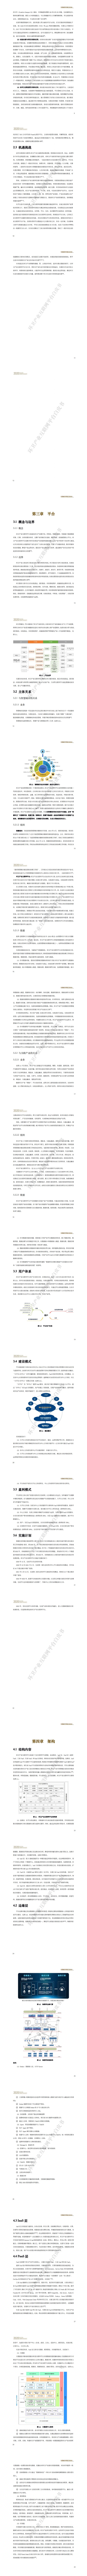 【中国城市环境卫生协会】2020环卫产业互联网平台白皮书_1.jpg